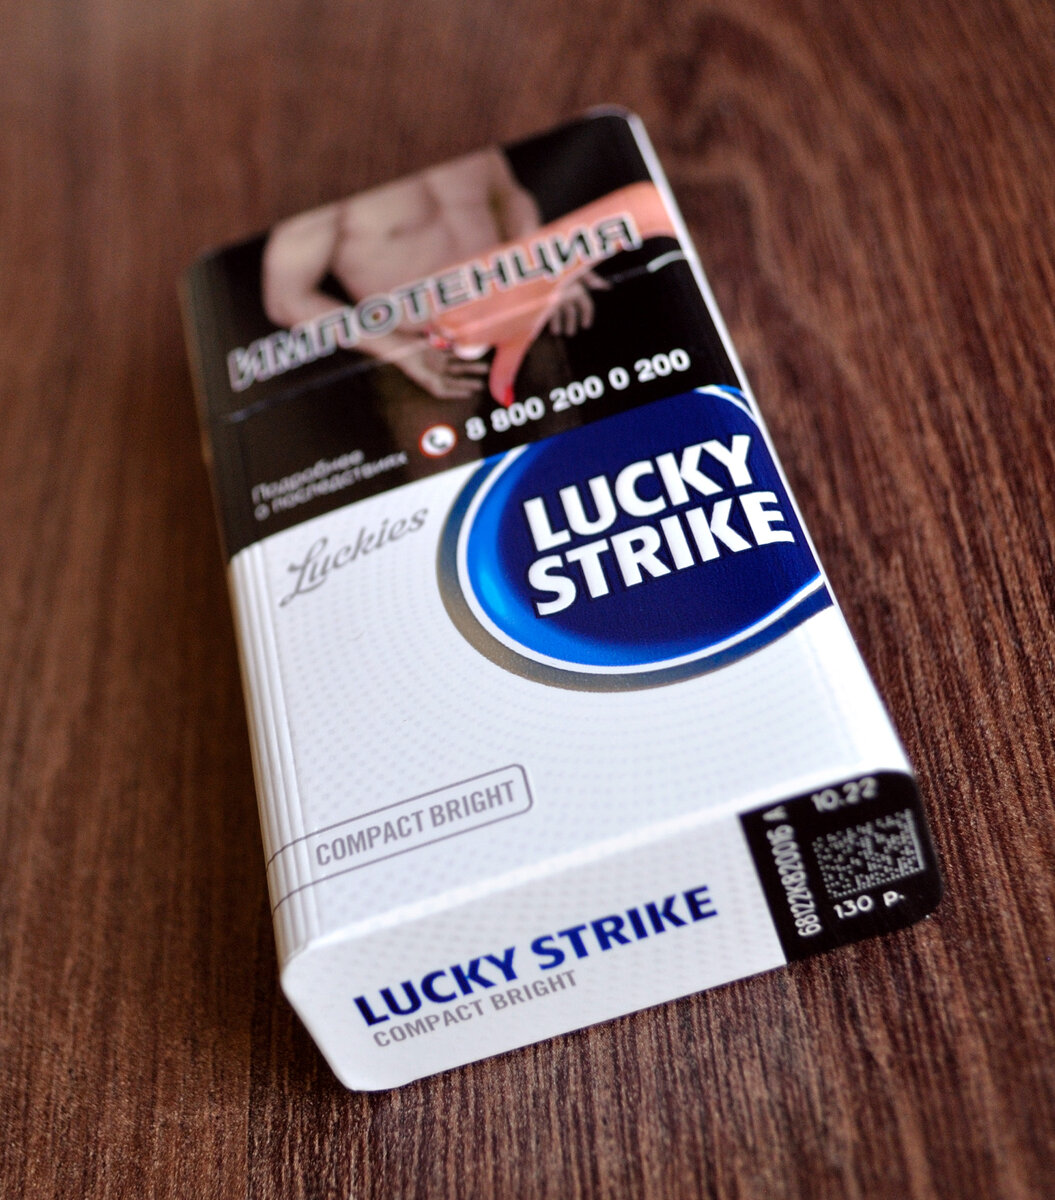 Лайки страйк компакт. Лаки страйк компакт Брайт. Сигареты лаки страйк компакт Брайт. Сигареты лайки Strike компакт. Сигареты Lucky Strike компакт Блю.